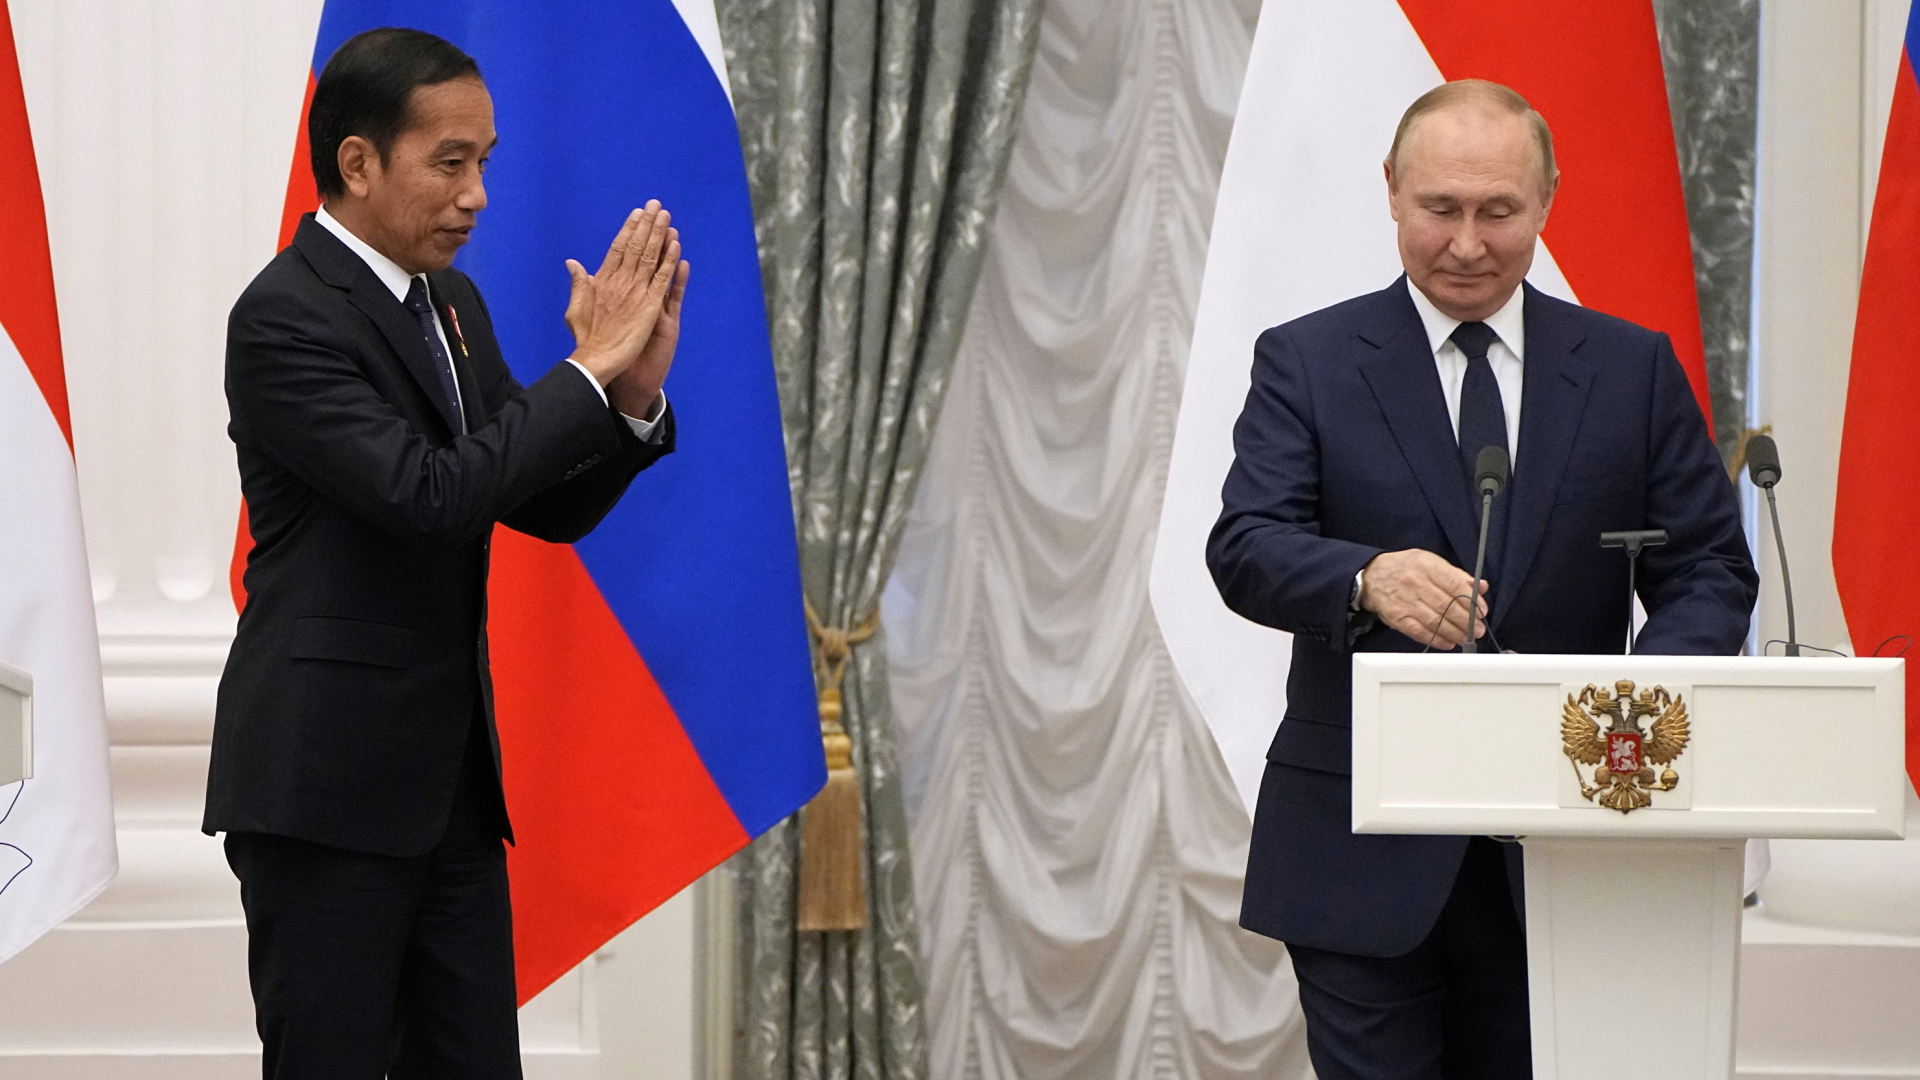 Indonesiens Präsident Widodo macht am Ende einer Pressekonferenz mit Putin eine freundschaftliche Geste in Richtung des russischen Präsidenten | AP